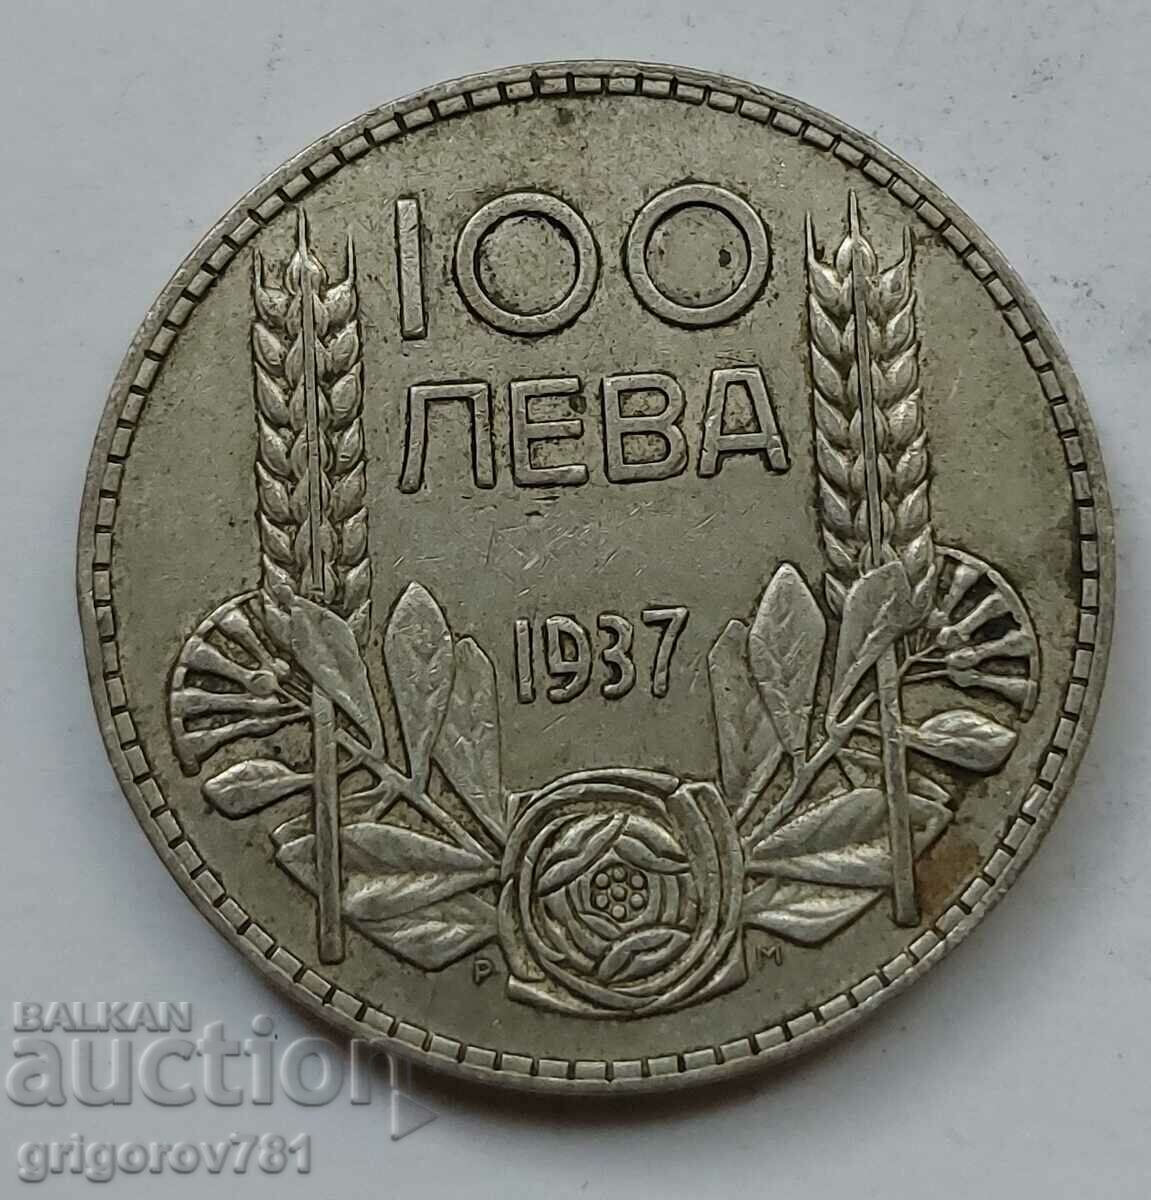 100 leva silver Bulgaria 1937 - silver coin #87